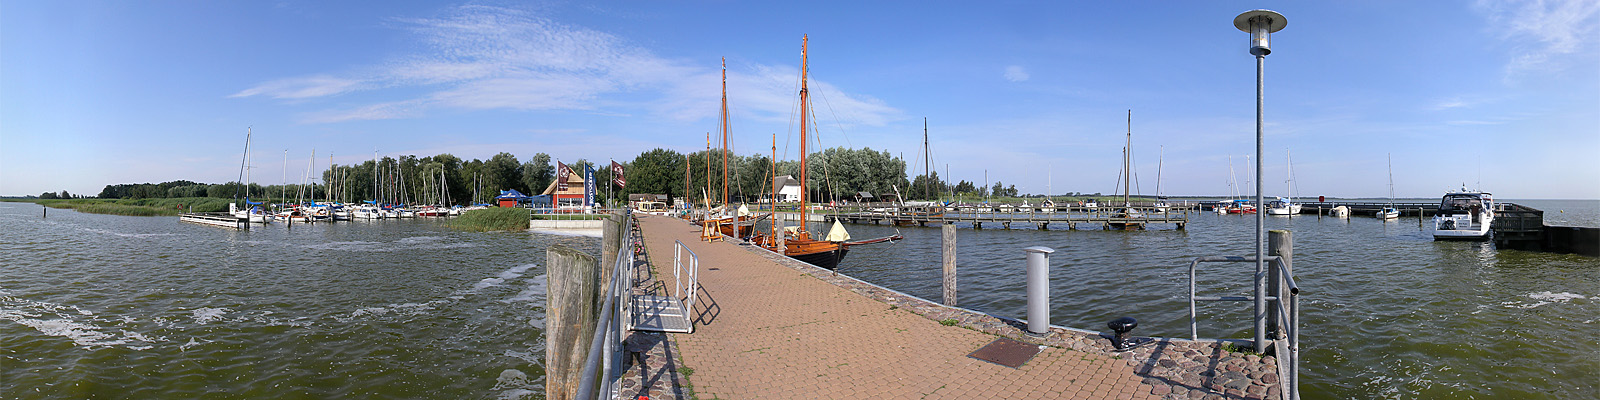 Panorama: Dierhagen Hafen - Motivnummer: hgw-die-01